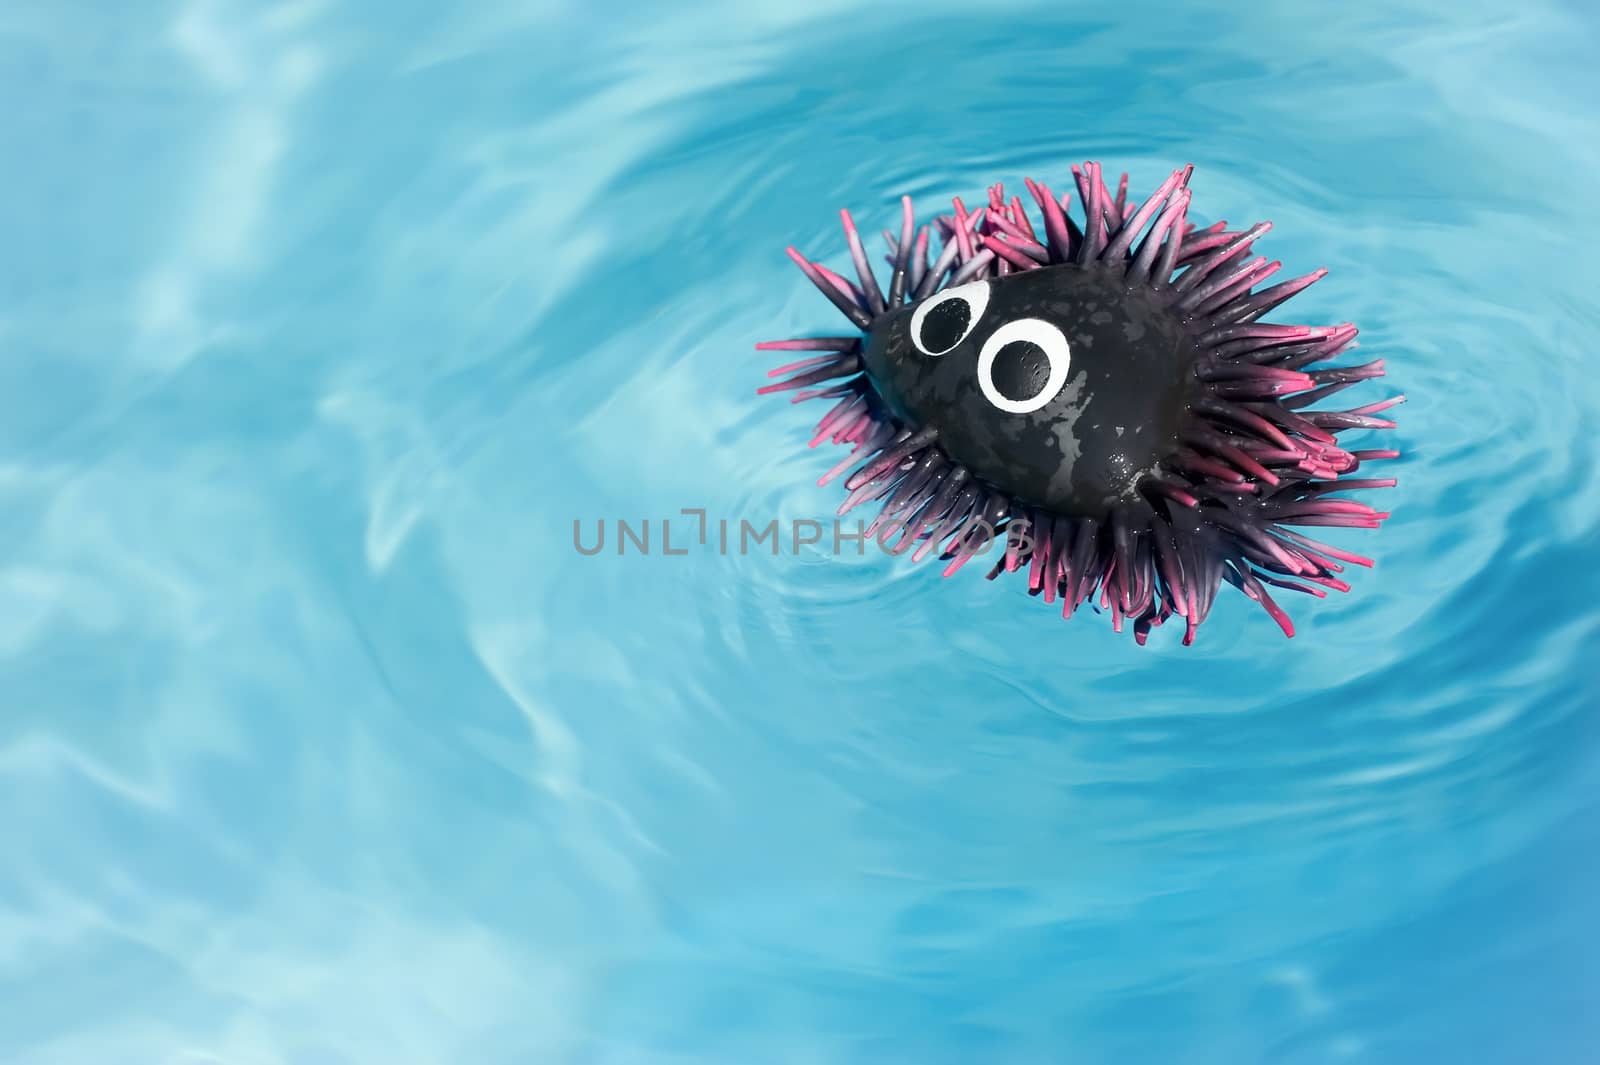 rubber sea urchin by nelsonart